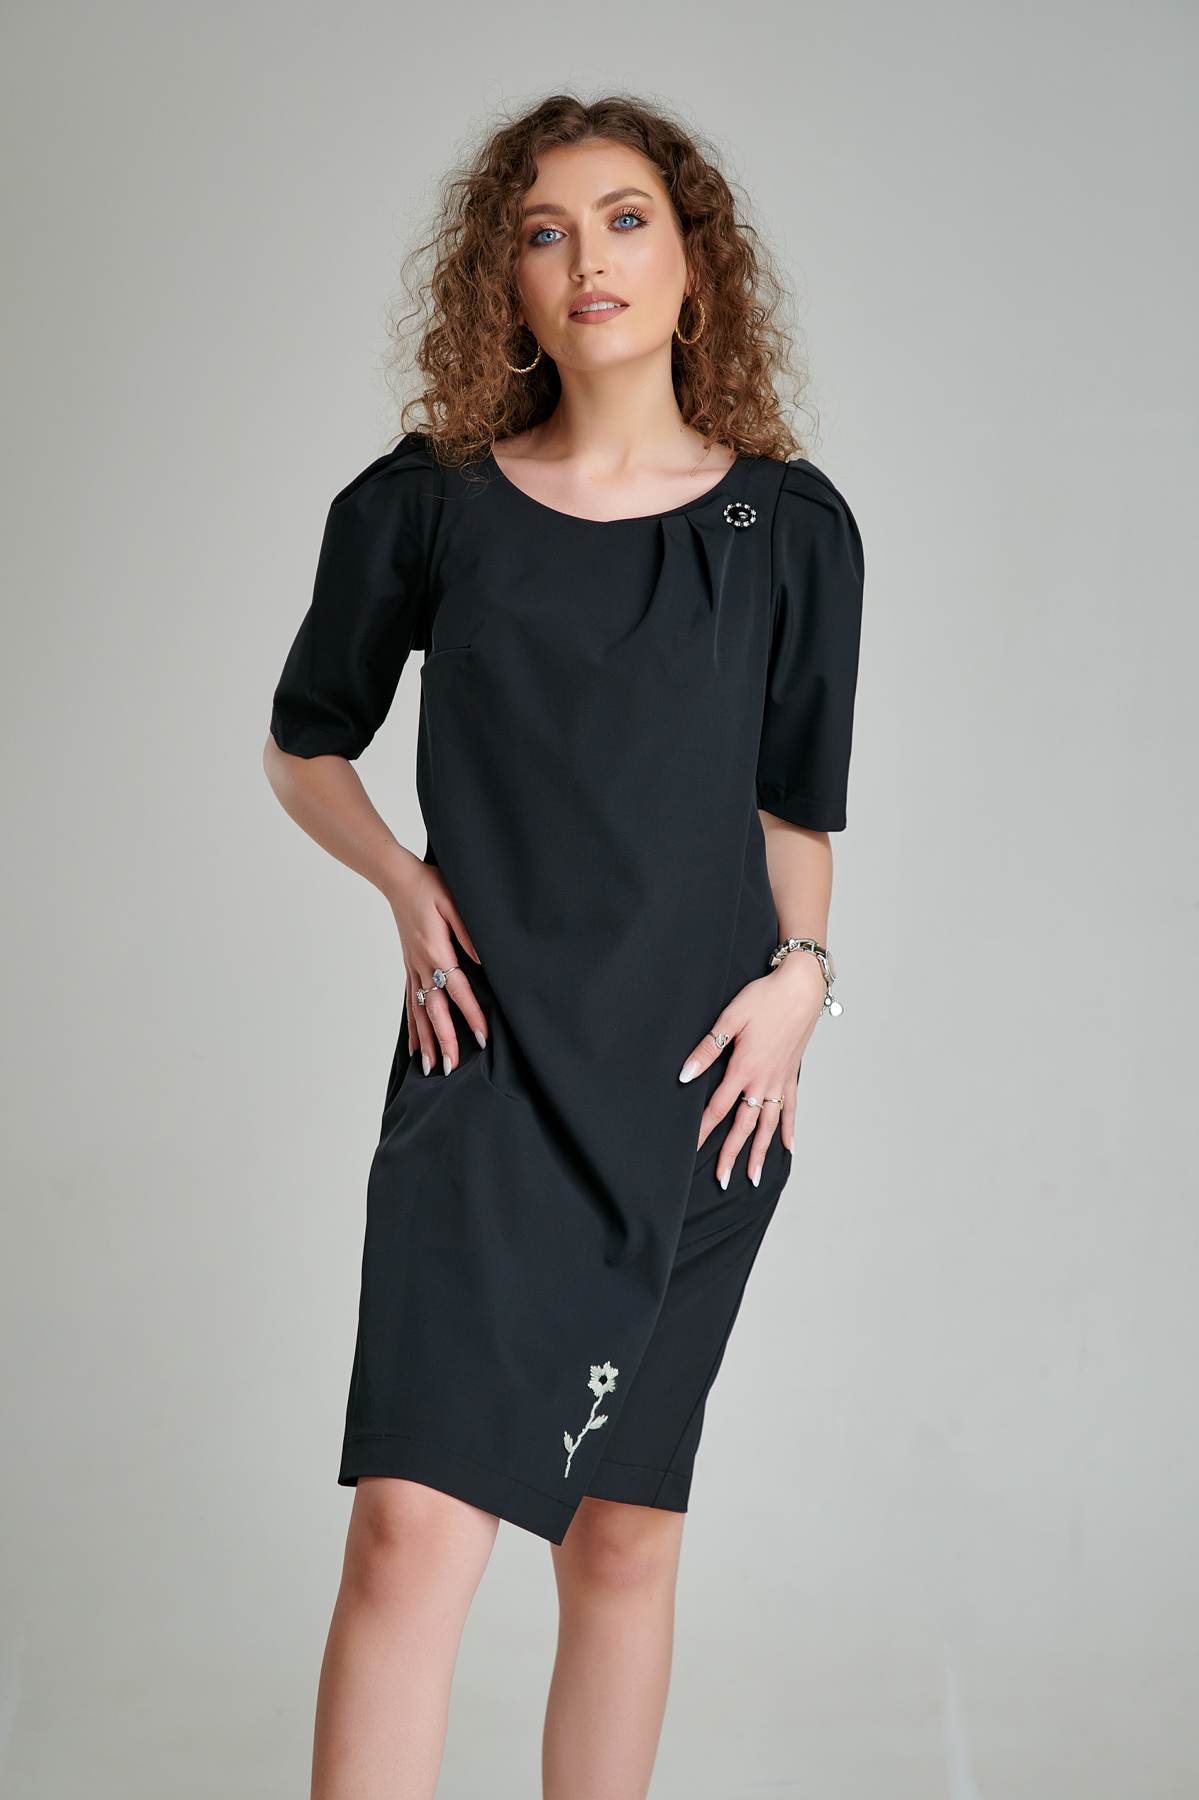 Rochie OLIVIER din tercot negru. Materiale naturale, design unicat, cu broderie si aplicatii handmade